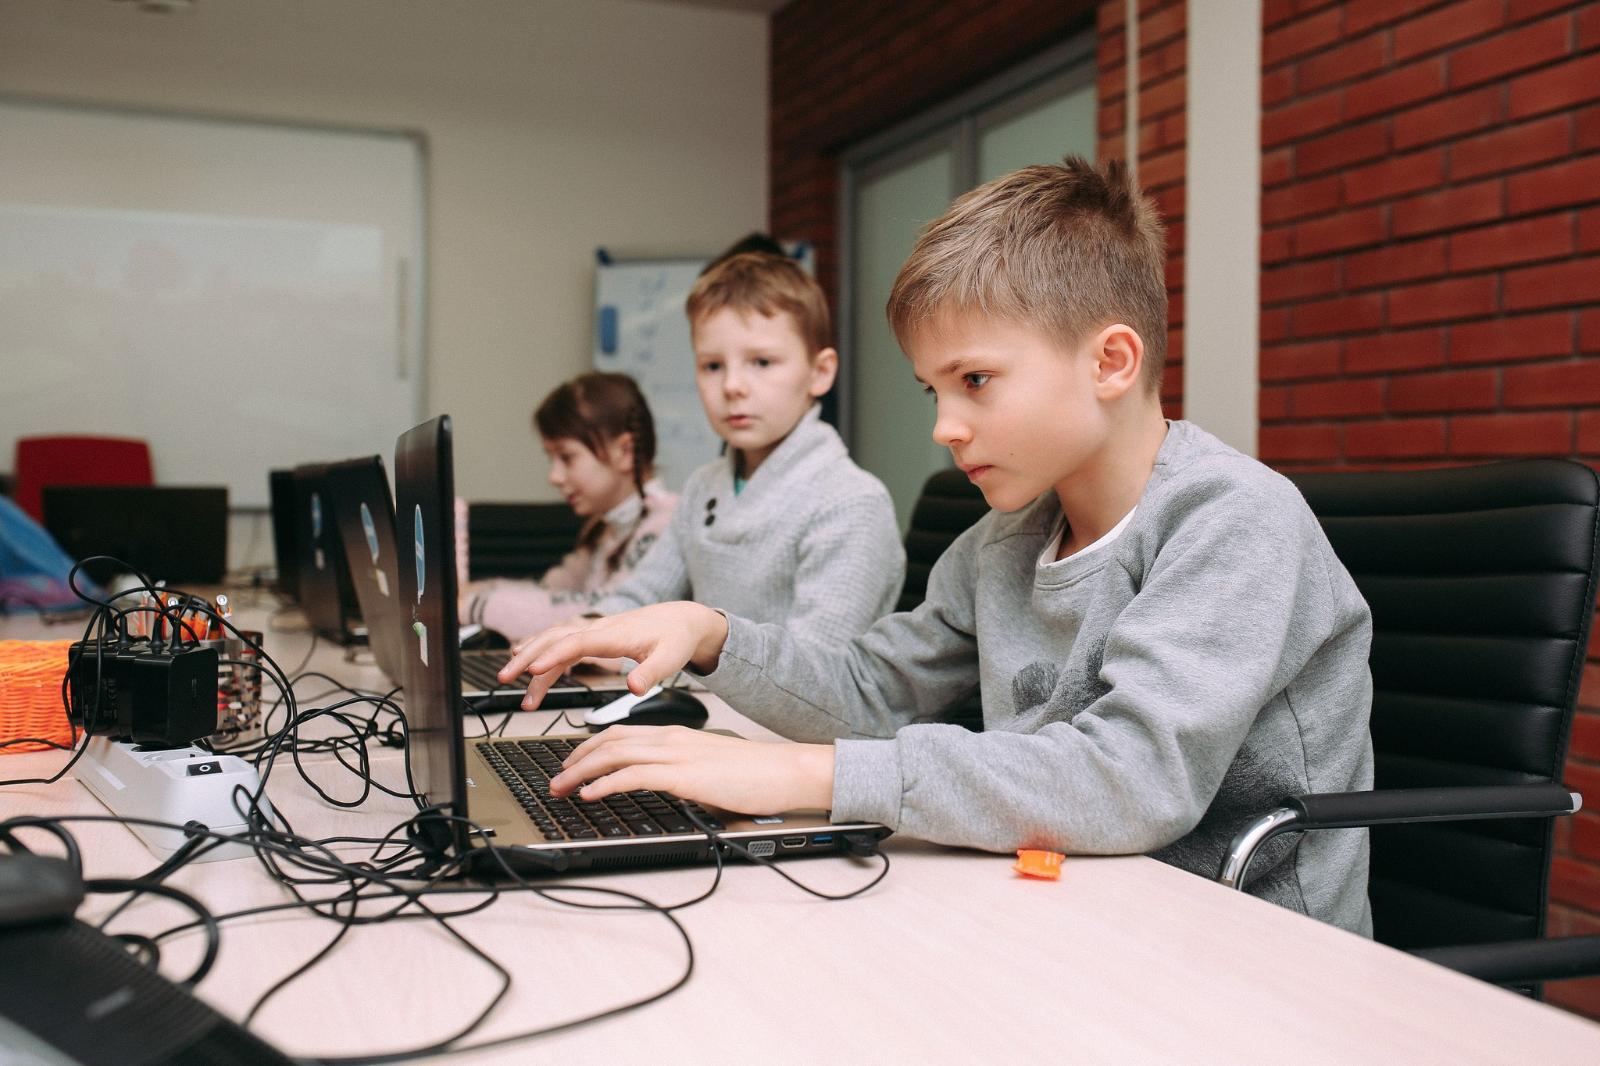 В средней школе кружки по программированию интересуют 18% мальчиков и лишь 5% девочек